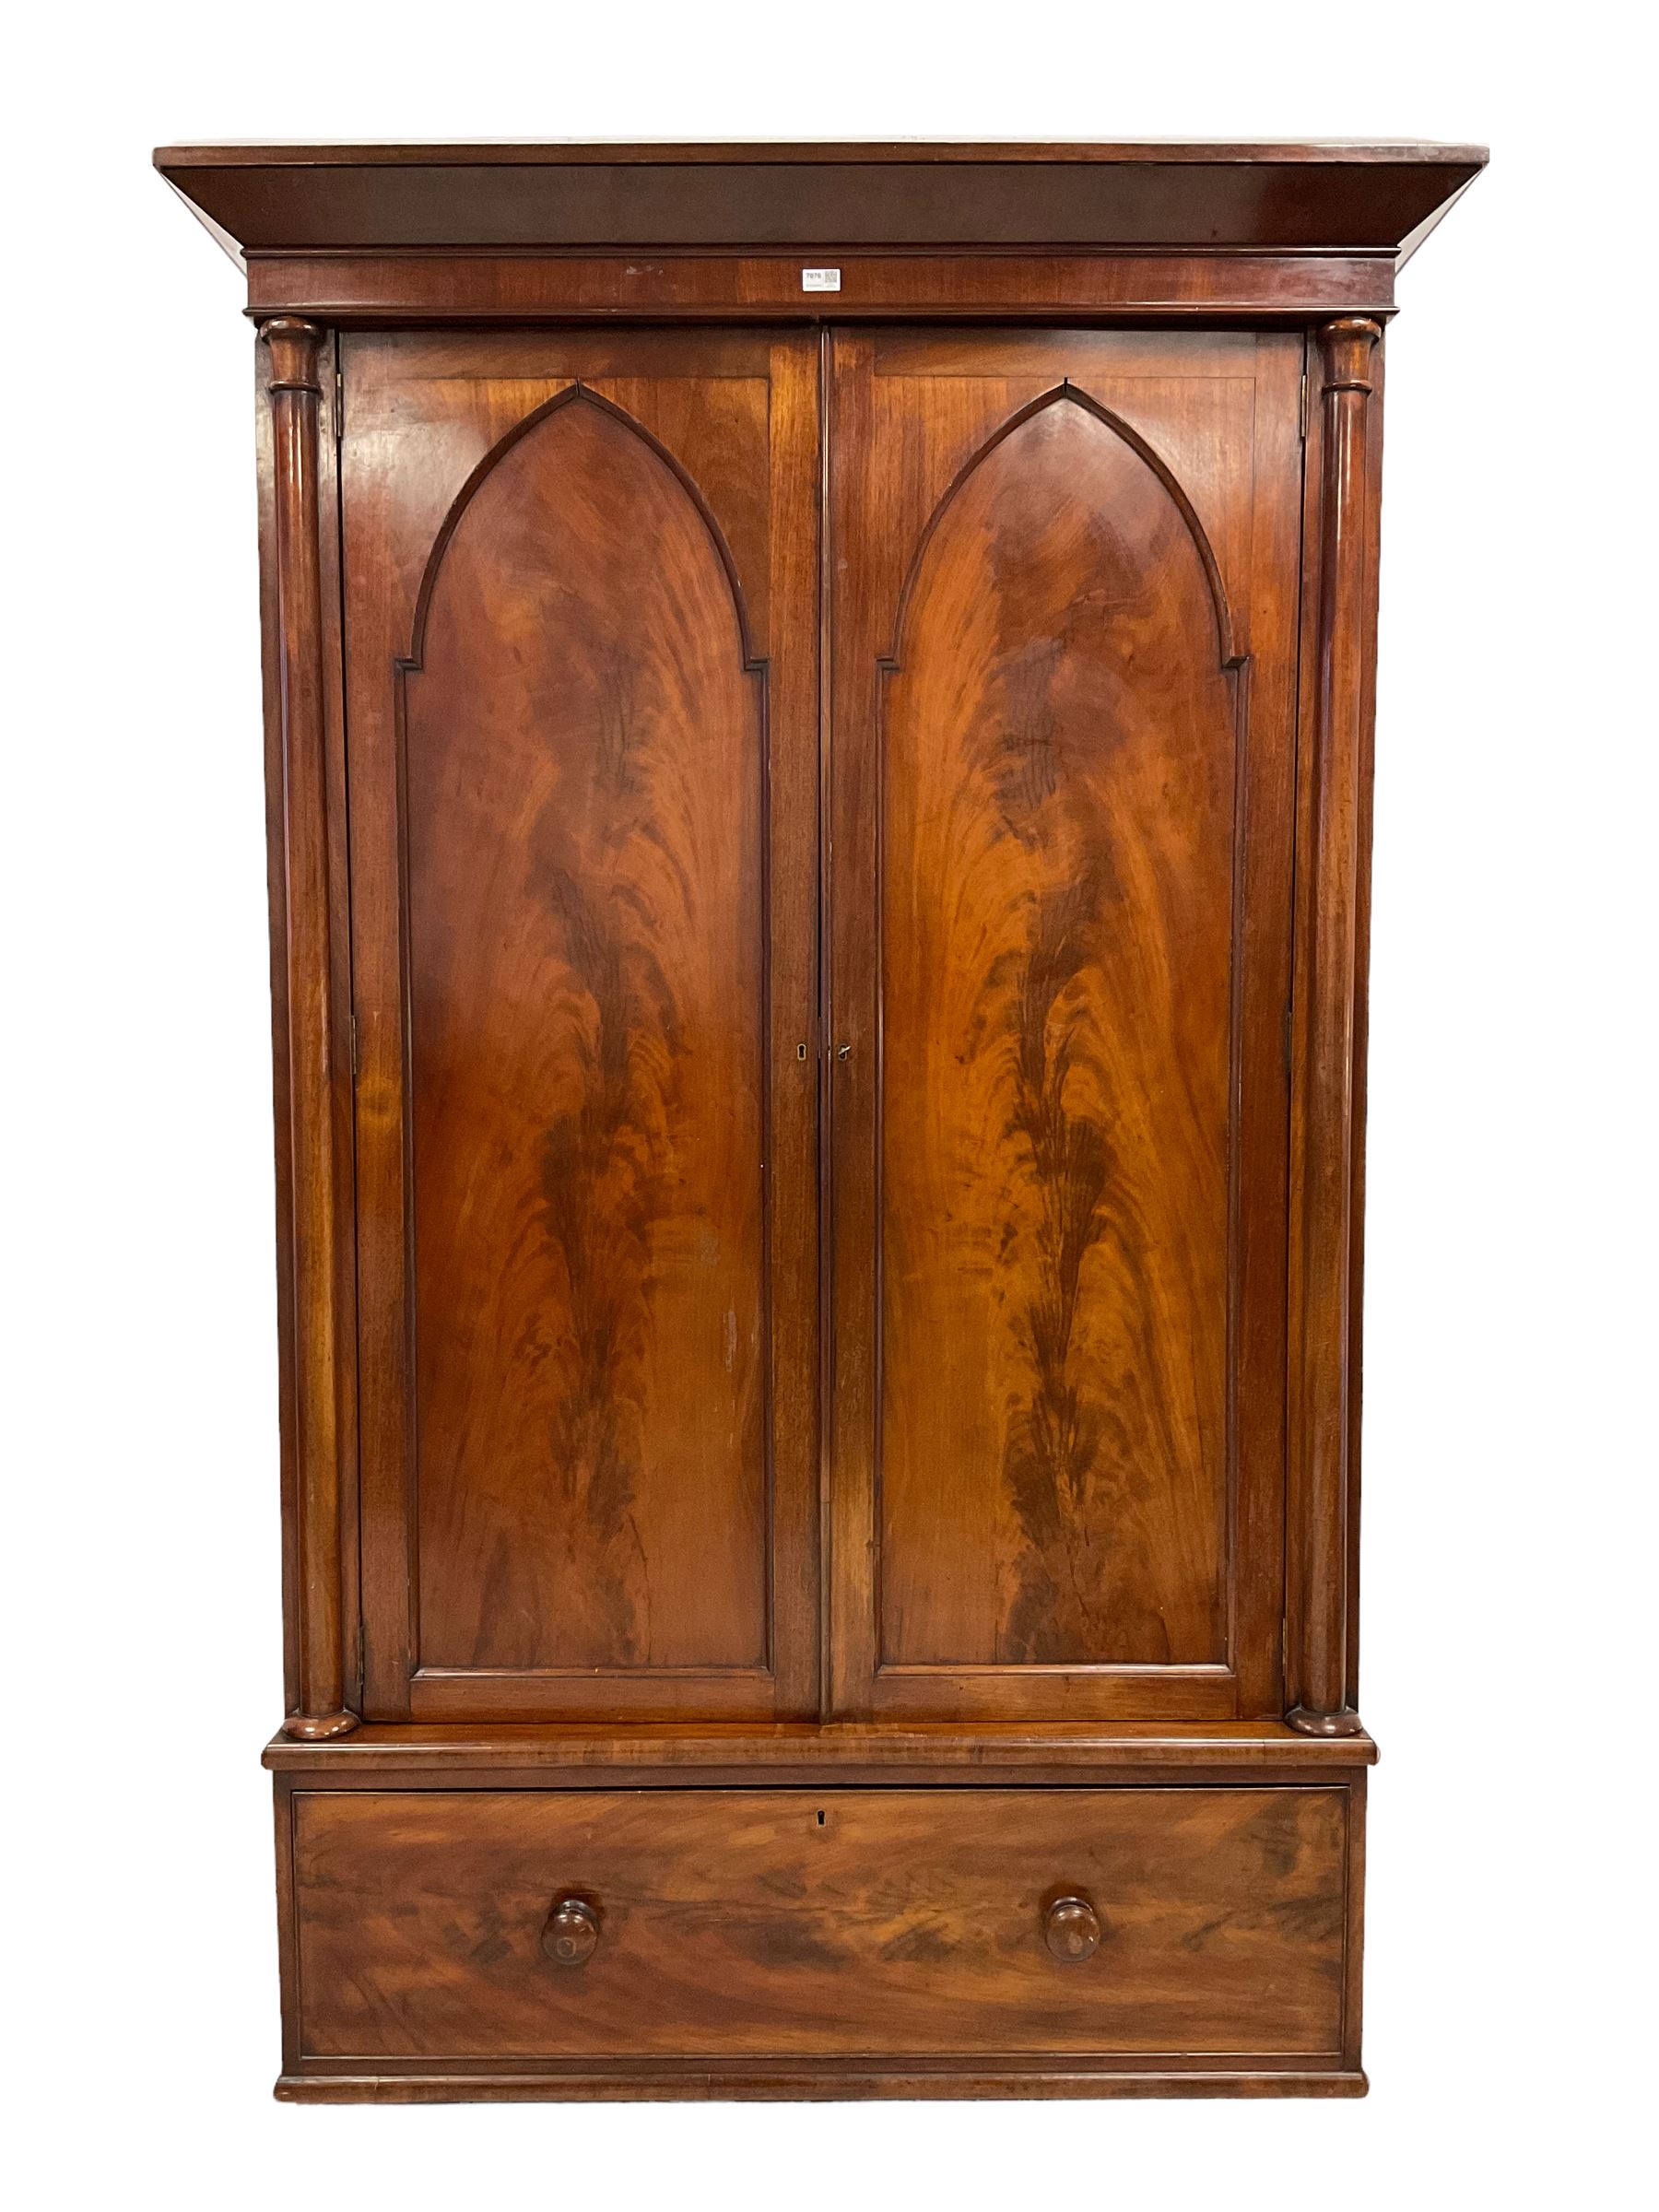 Early 19th century mahogany double wardrobe